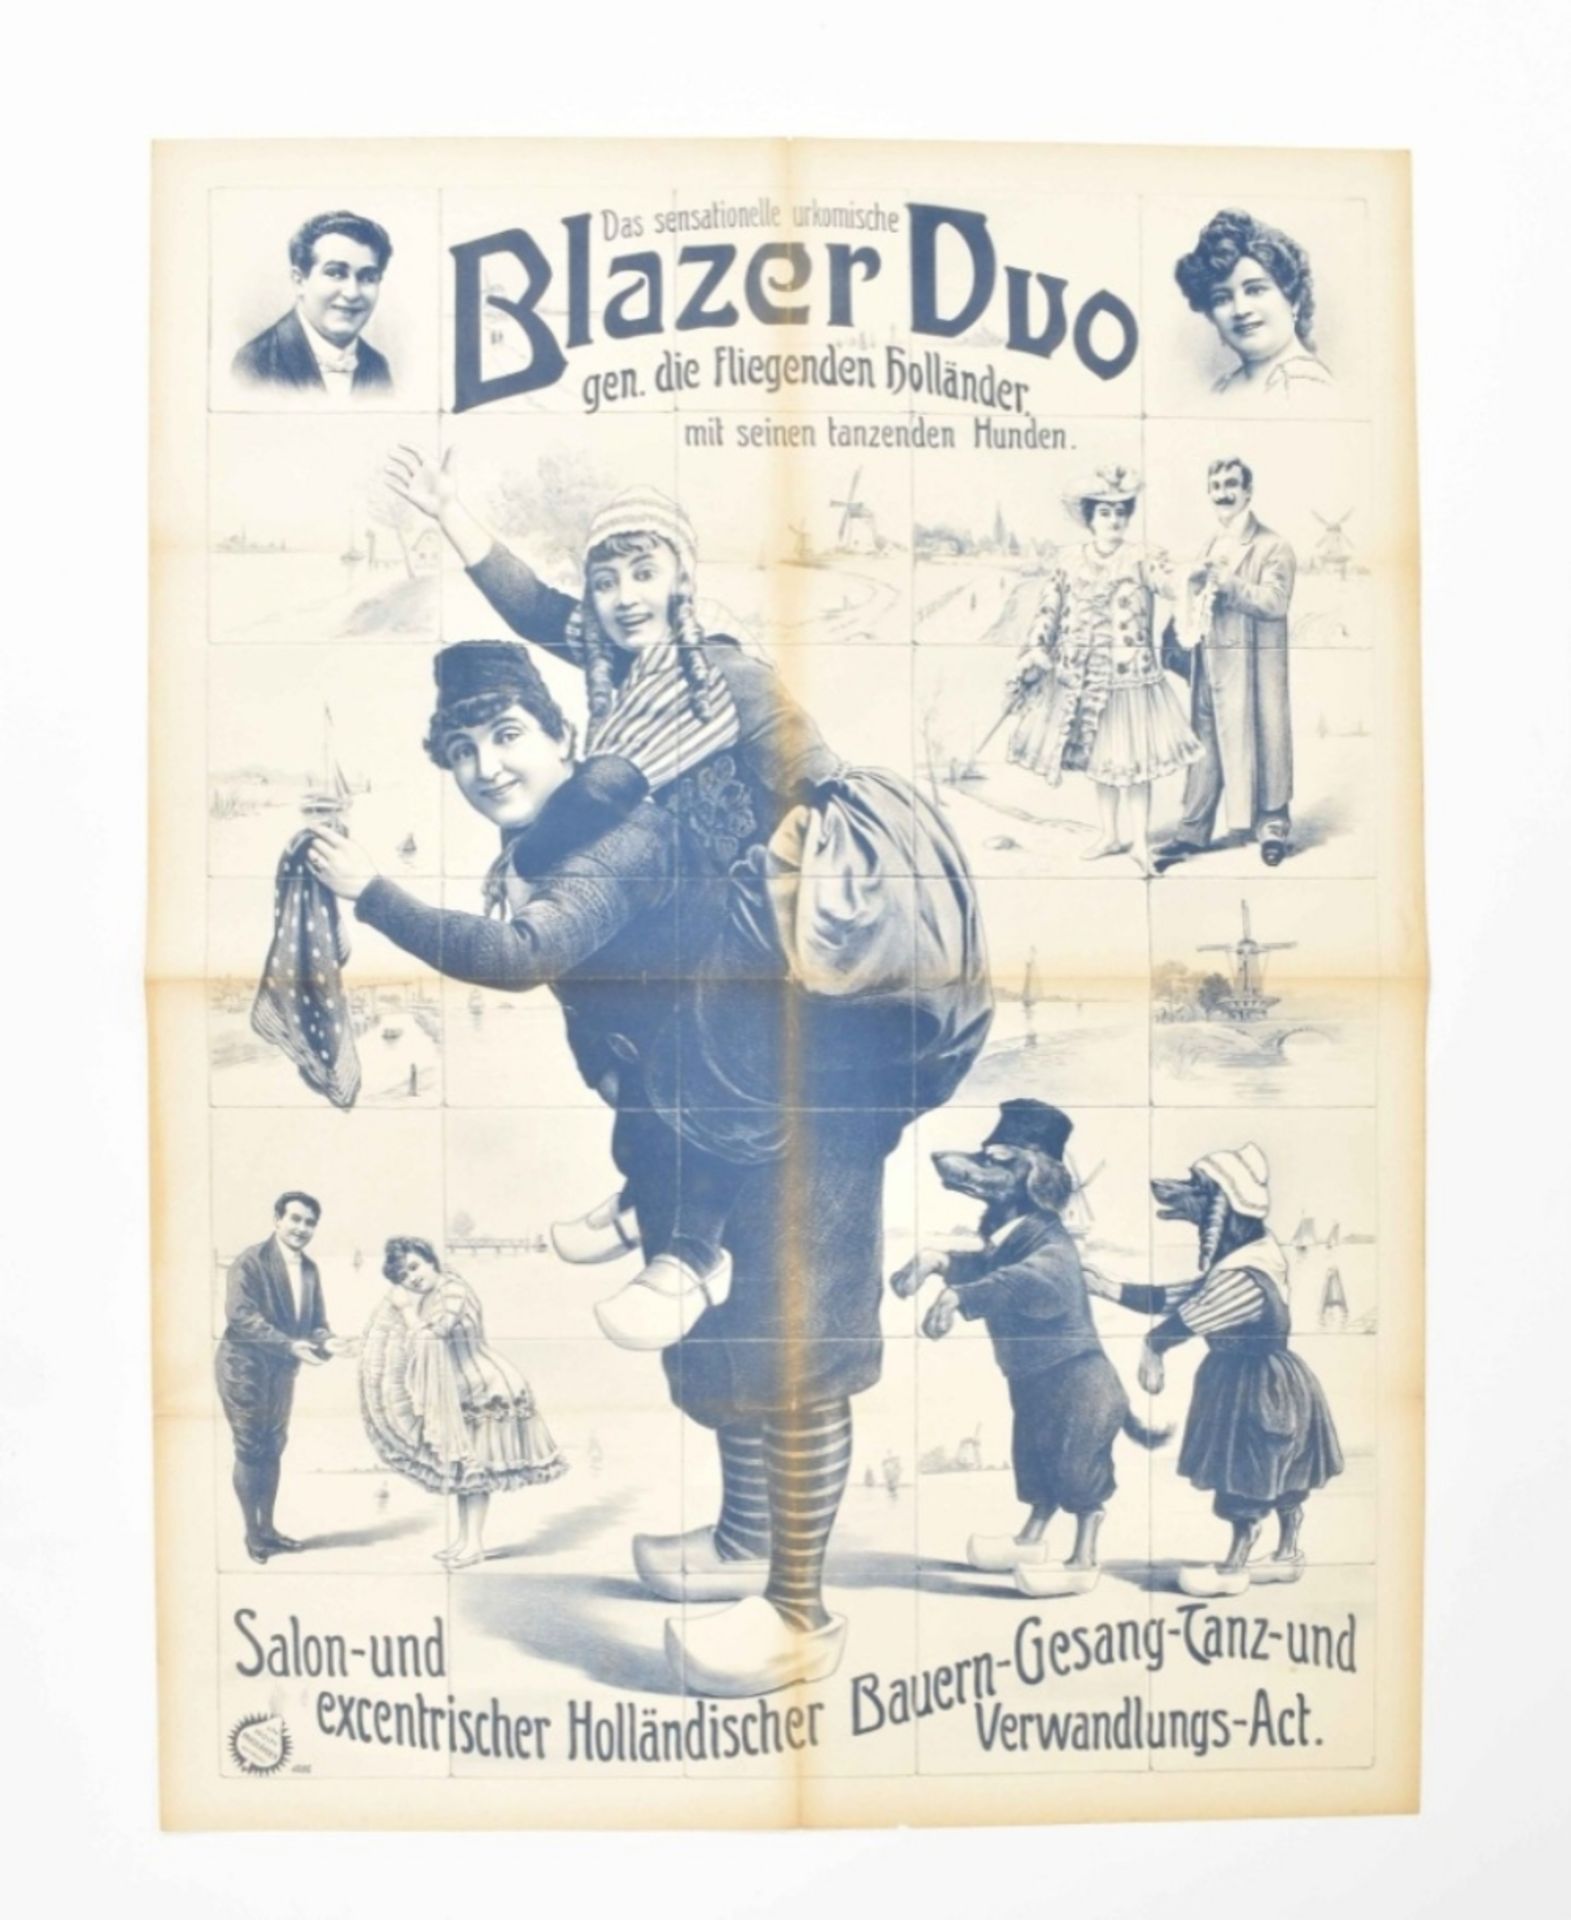 [Folklore] Das sensationelle Urkomische Blazer Duo, gen. die Fliegenden Holländer. Friedländer, 1907